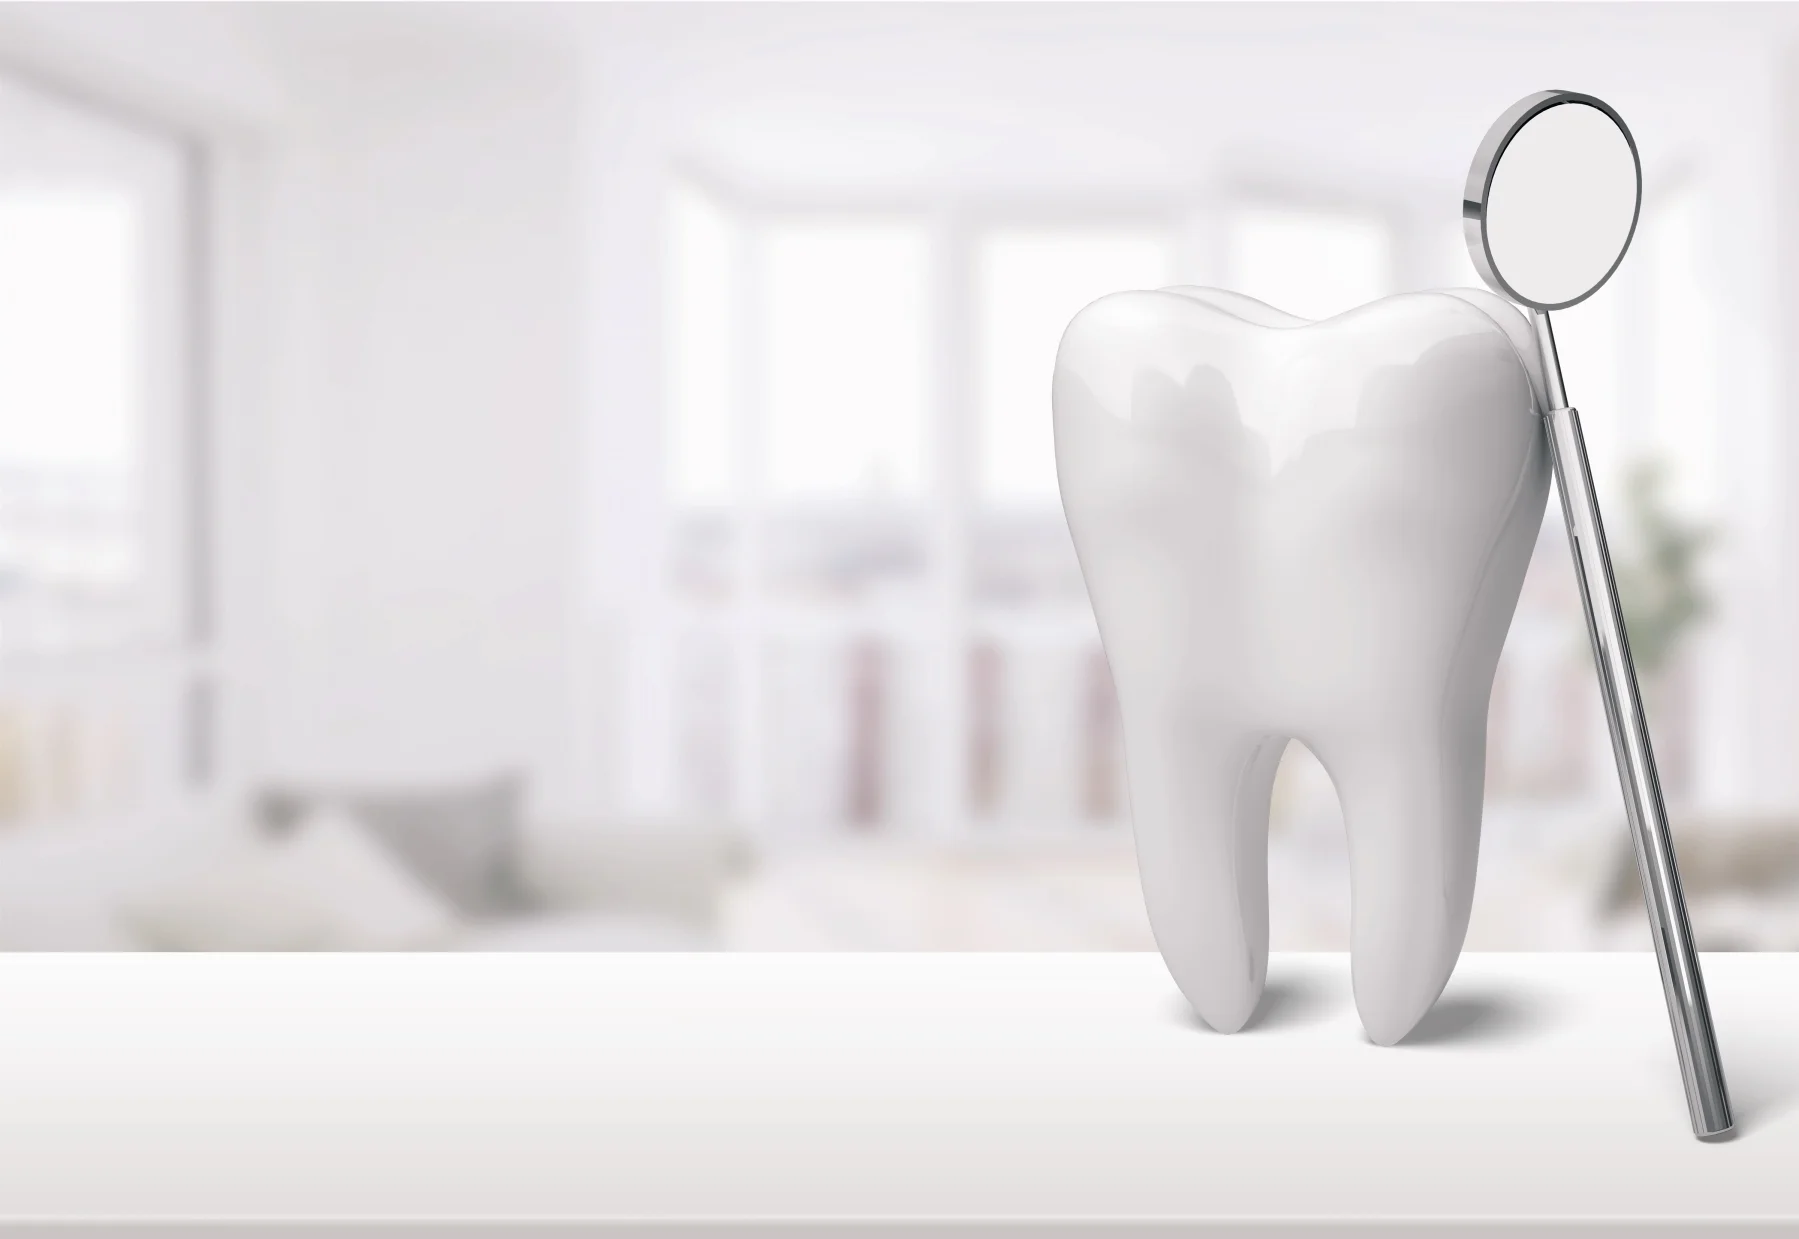 Zahnarztpraxis  Daniel Schulze  Zahn und Zahnarztspiegel